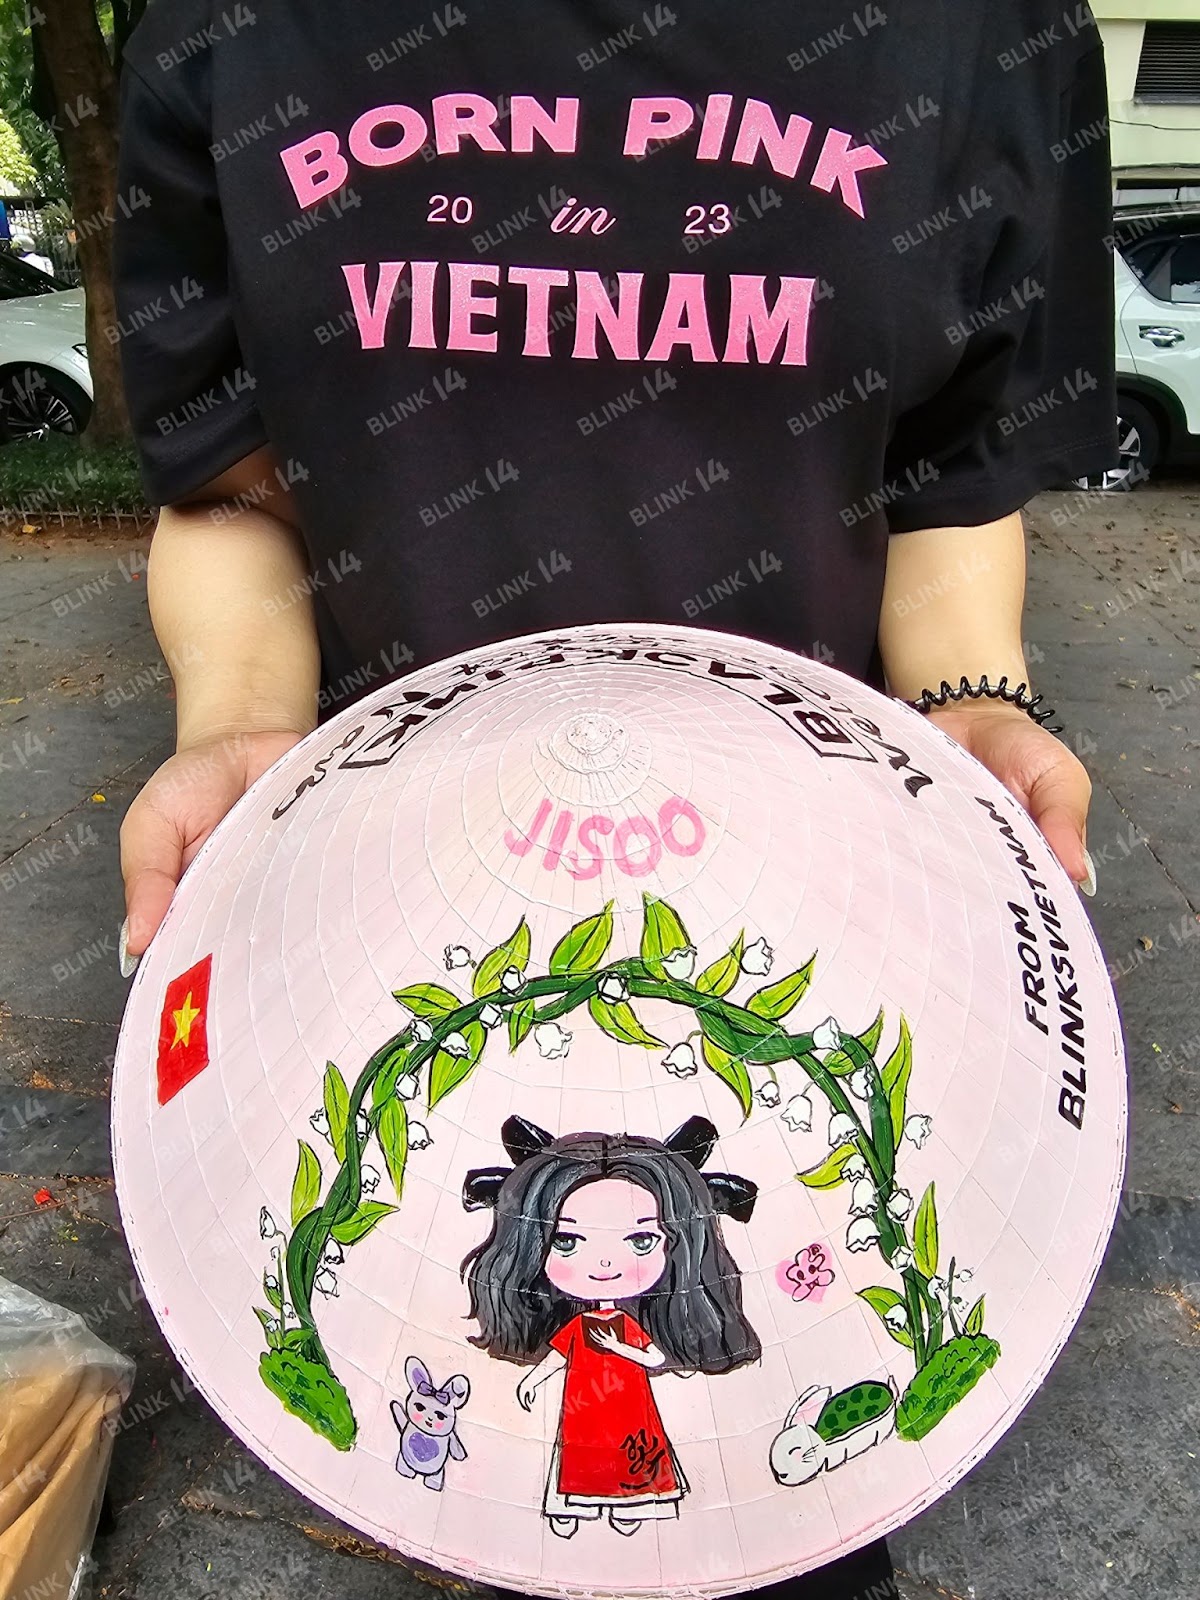 Xe buýt đen hồng quảng bá show Born Pink đi khắp Hà Nội, cận cảnh món quà của fan Việt sẽ được trao tận tay BLACKPINK - Ảnh 6.